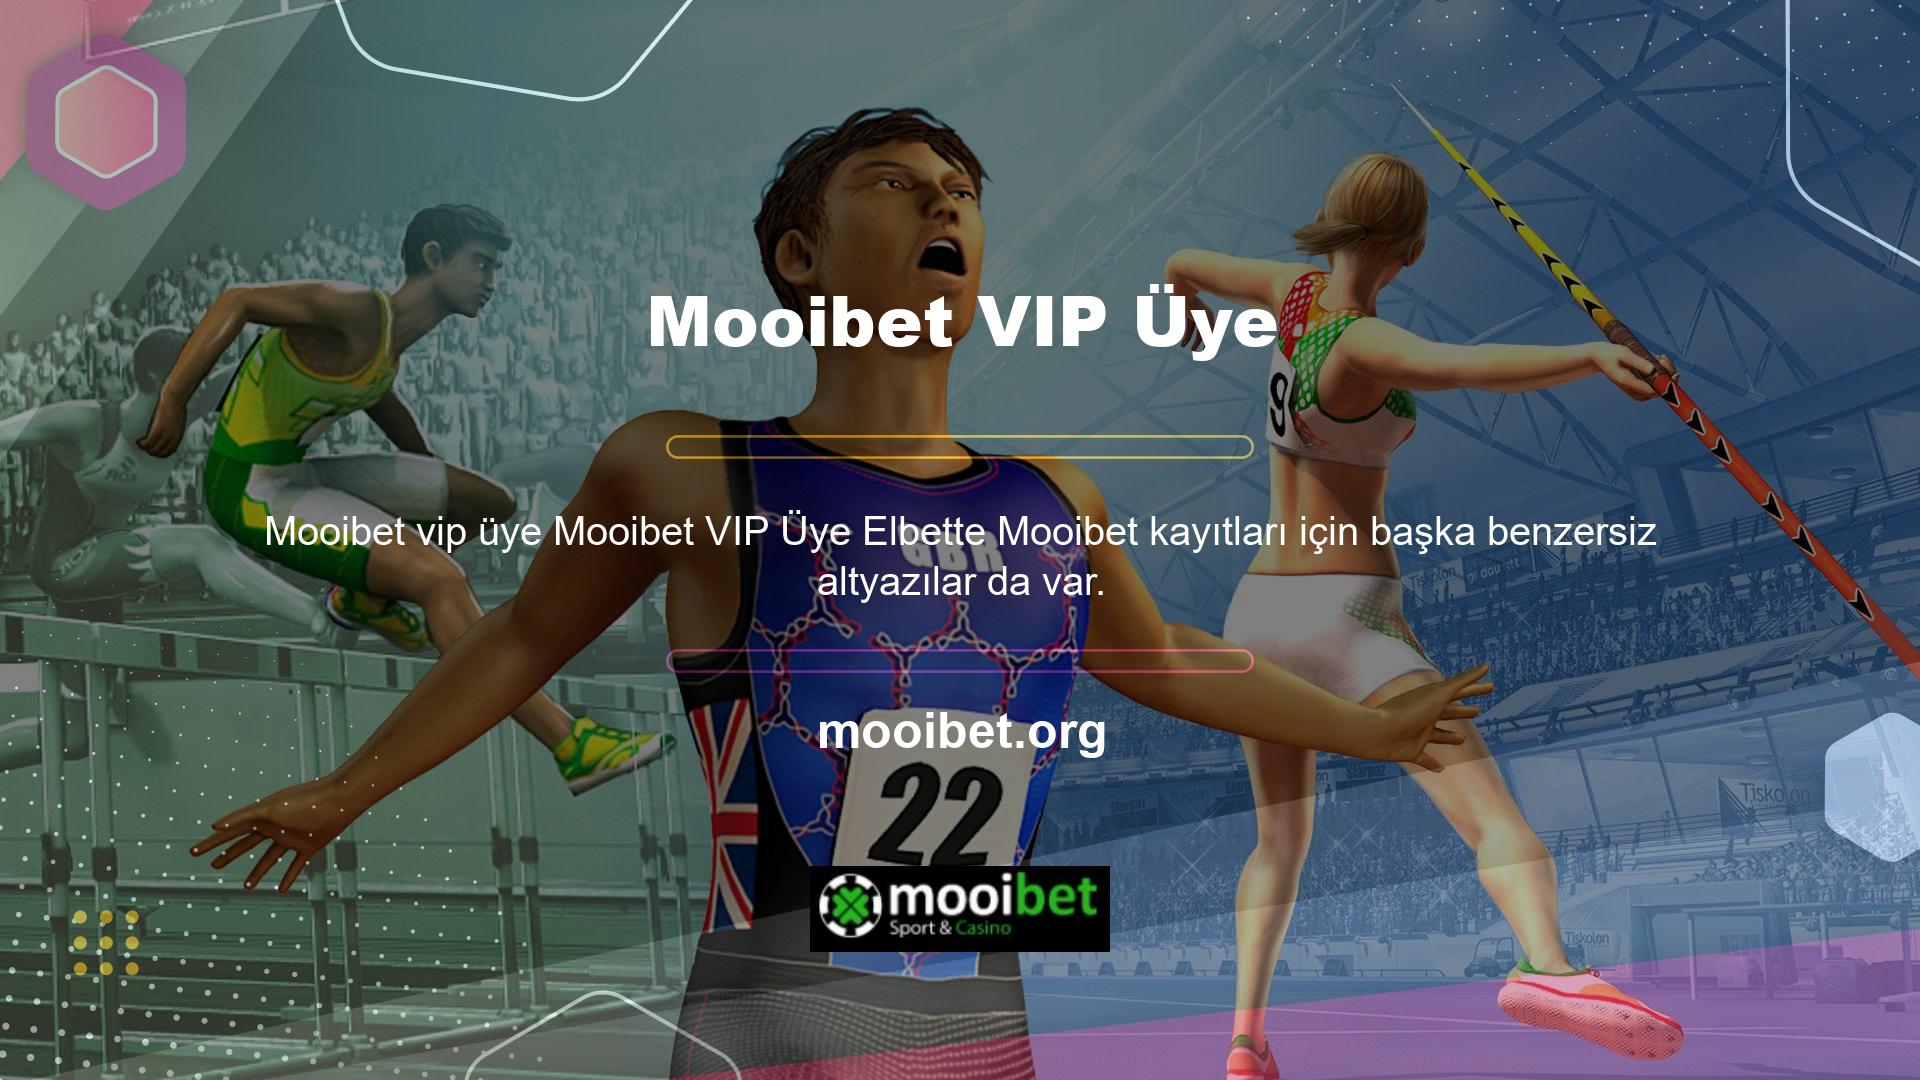 Normal kayıt işleminin yanı sıra kullanıcılar Mooibet VIP üye de olabiliyorlar ve diğer casino sitelerinde de örnekler mevcut